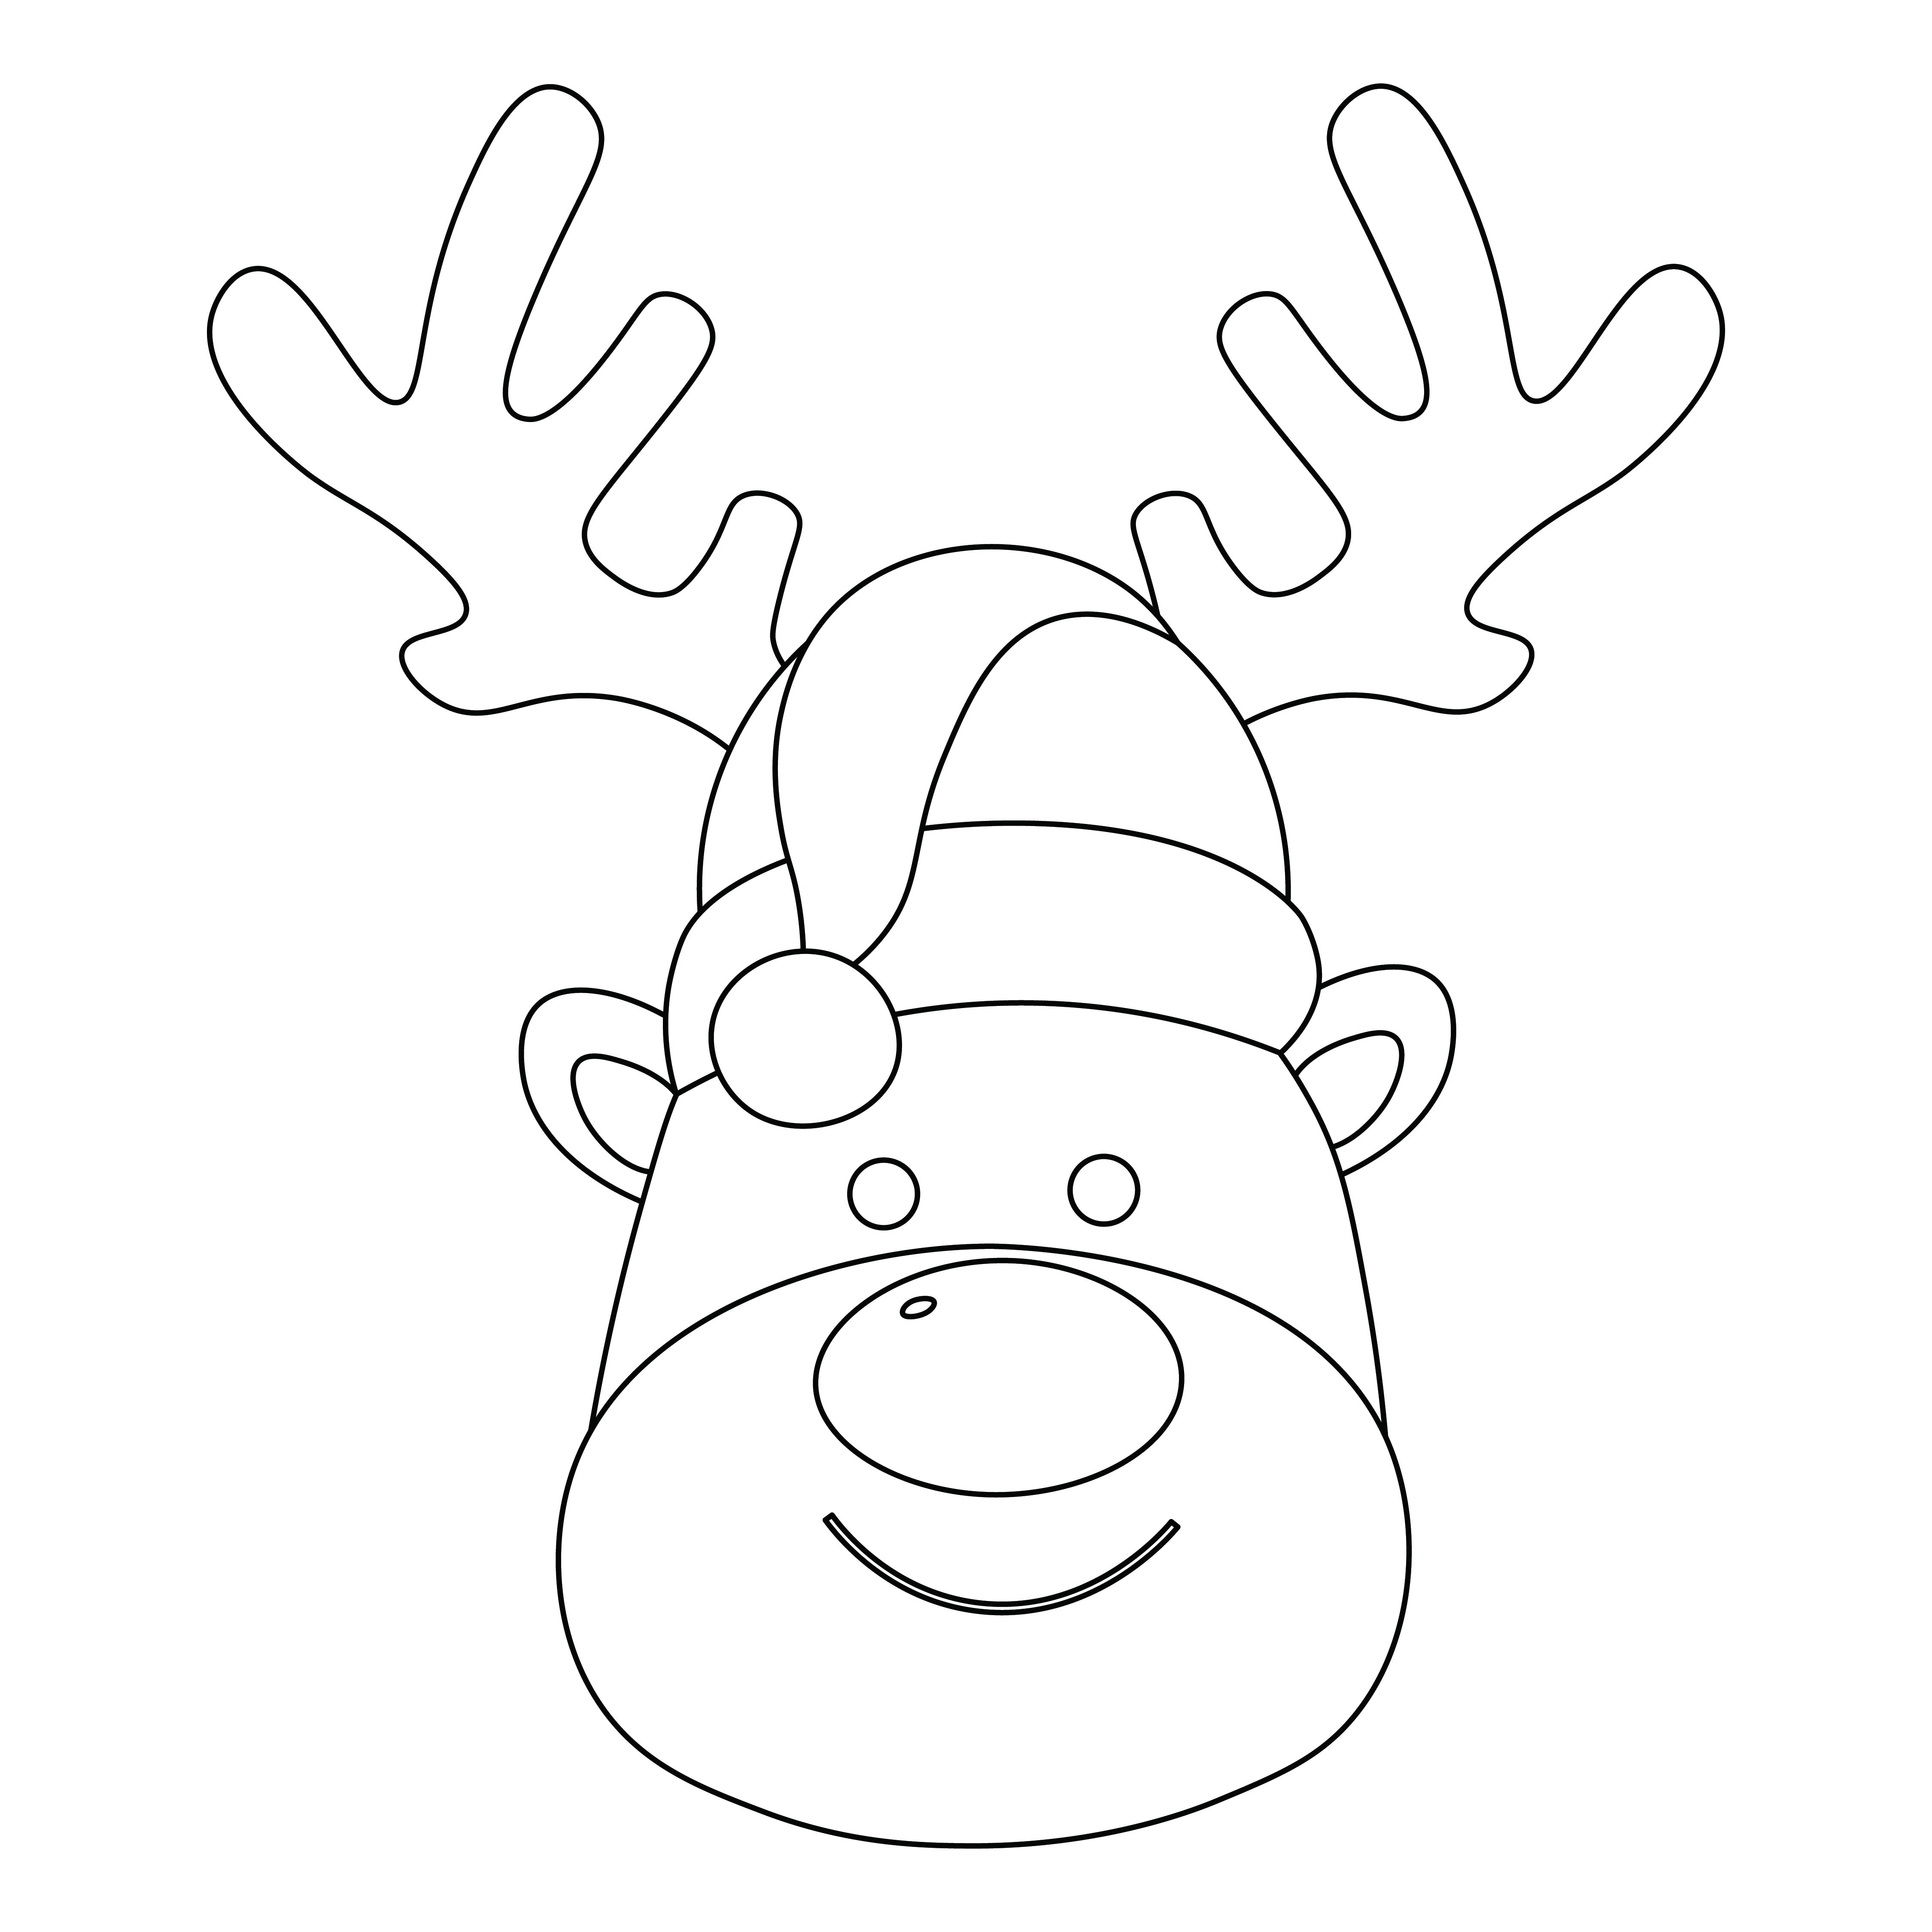 9 Best Images of Reindeer Free Printable Faces Free Printable